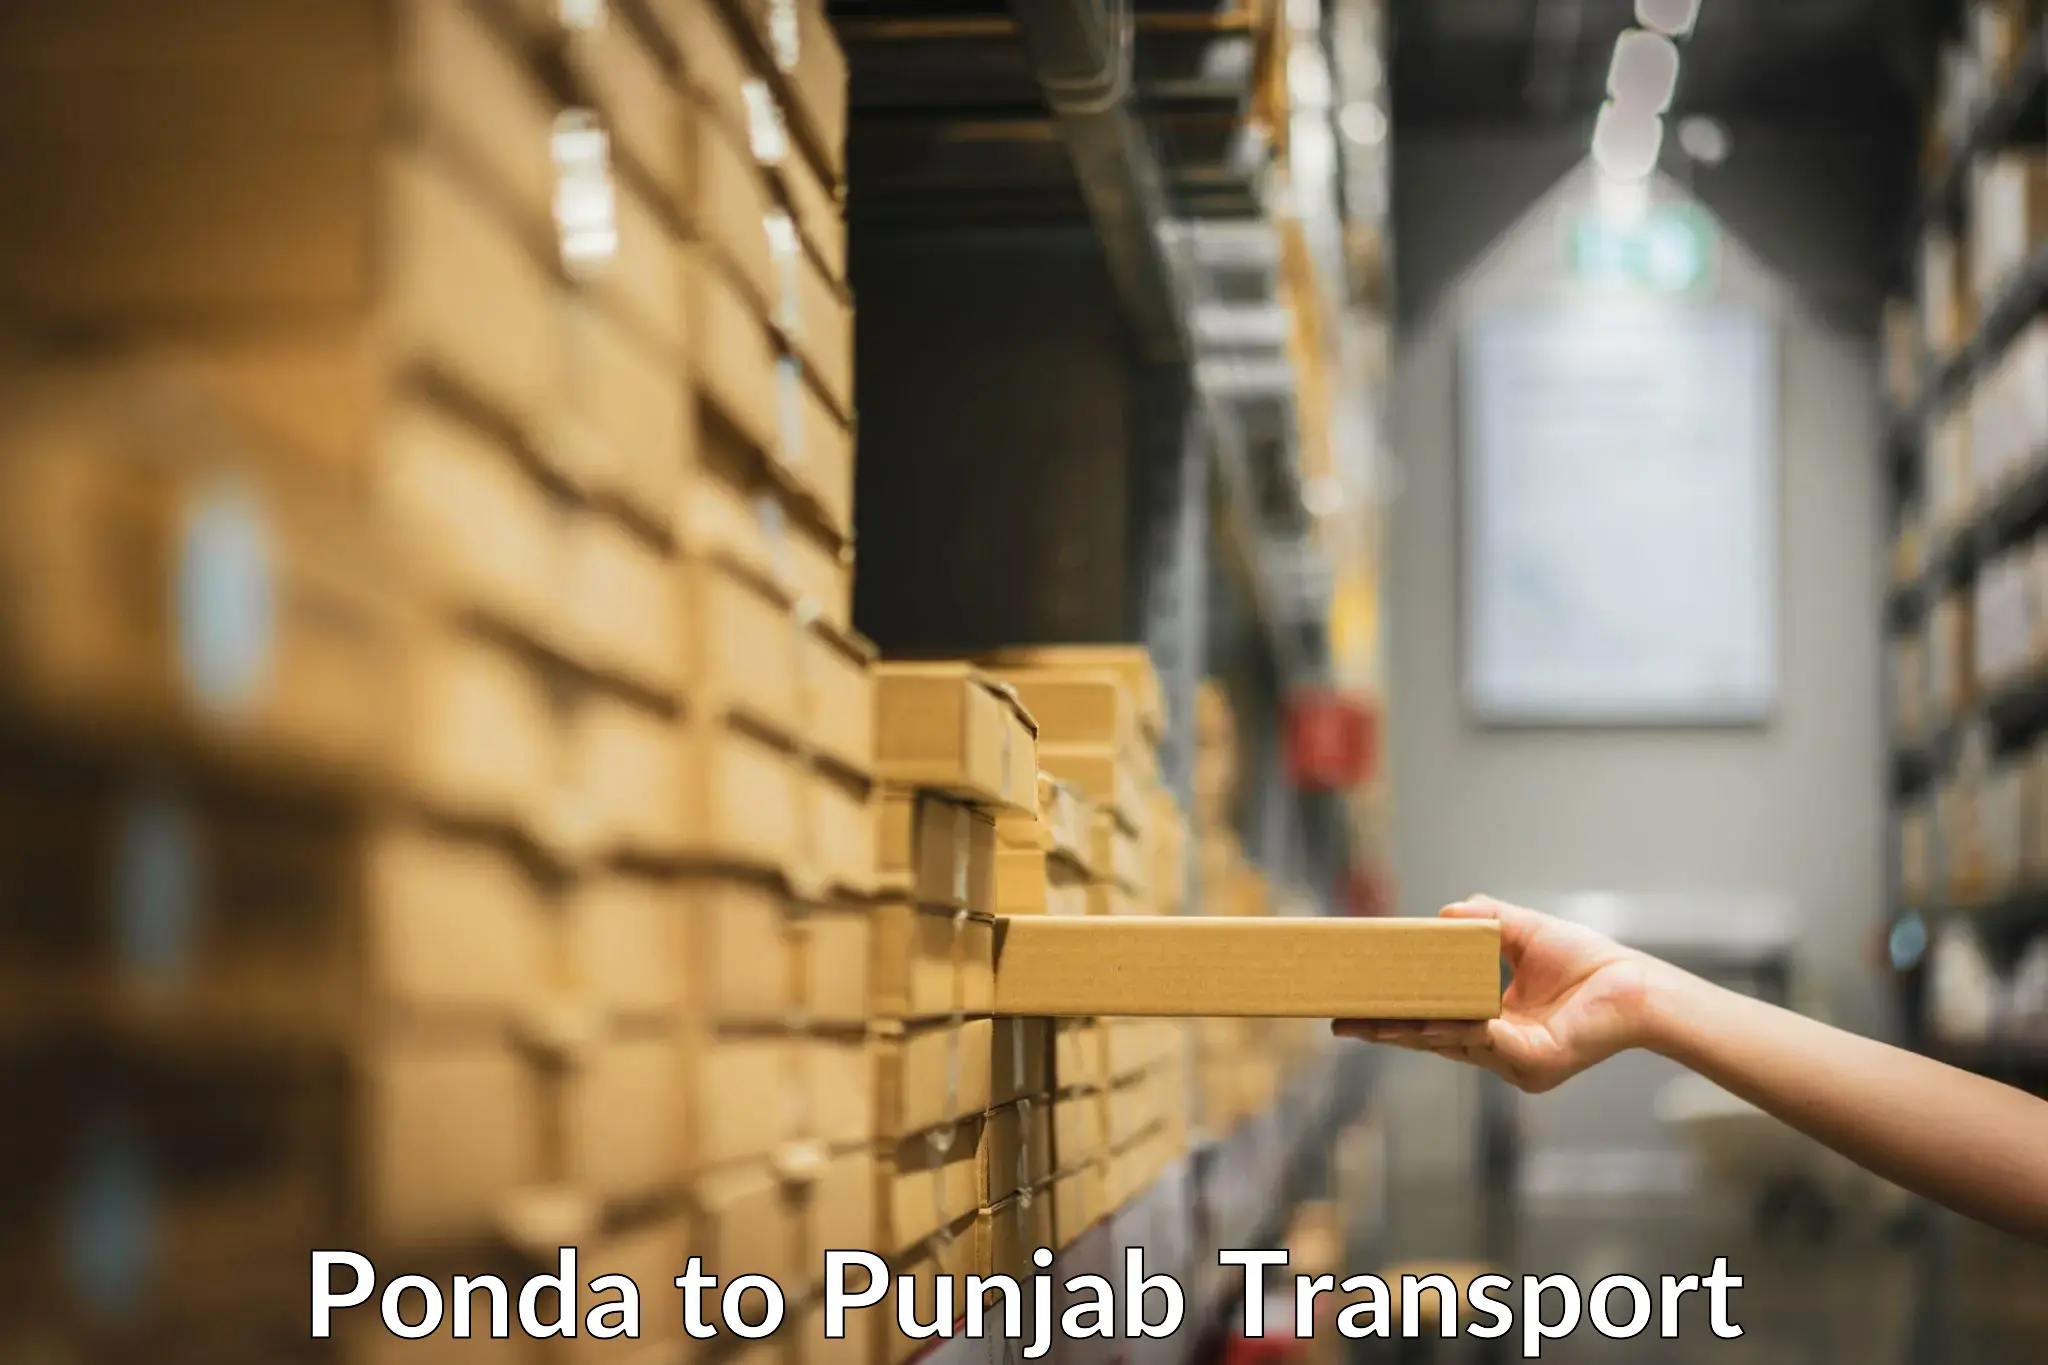 Pick up transport service Ponda to IIT Ropar